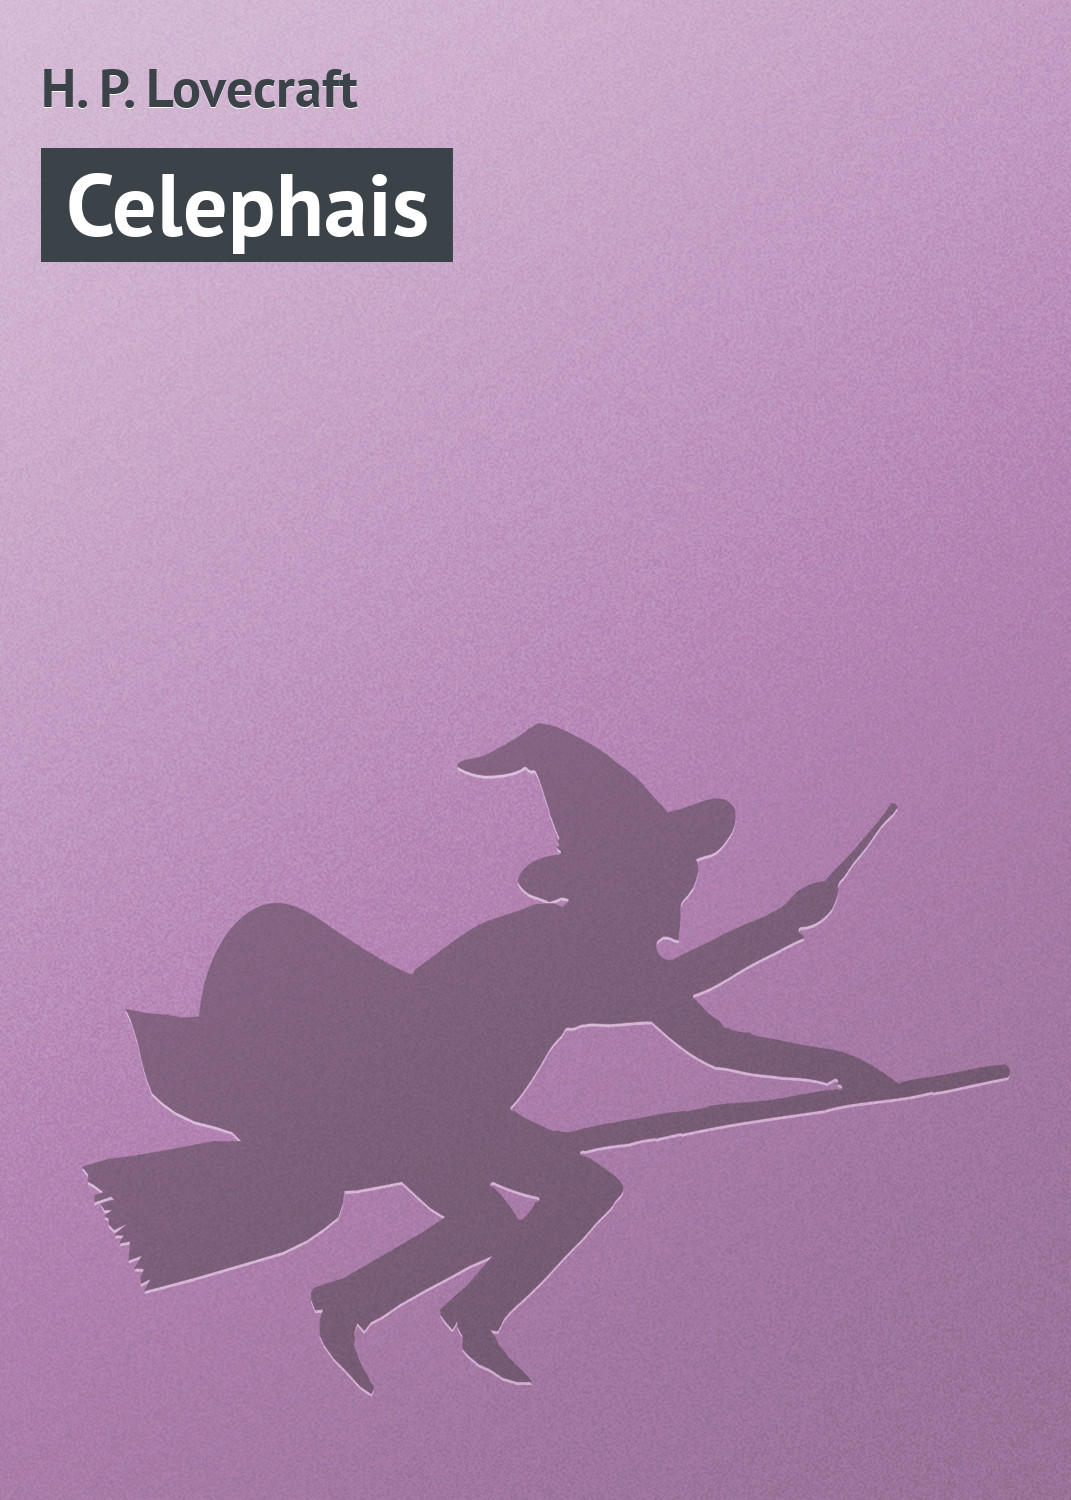 Книга Celephais из серии , созданная H. Lovecraft, может относится к жанру Зарубежное: Прочее, Зарубежная классика, Ужасы и Мистика. Стоимость электронной книги Celephais с идентификатором 7948557 составляет 29.95 руб.